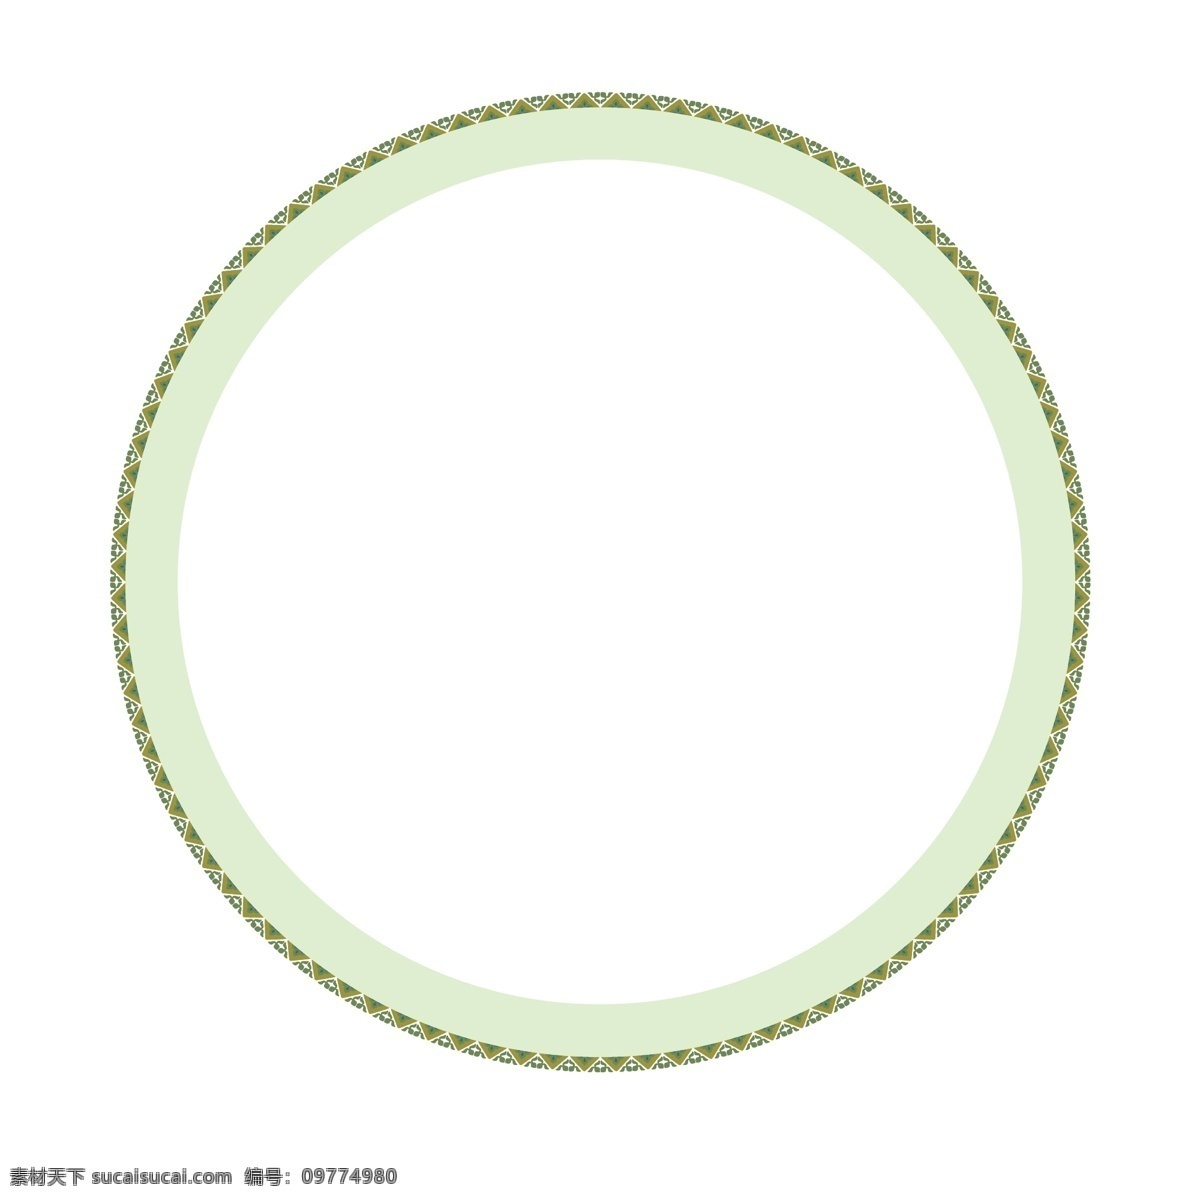 春季 绿色 圆形 花边 背景 圆形背景 花边圆圈 边框纹理 春天 春日 绿色圆圈